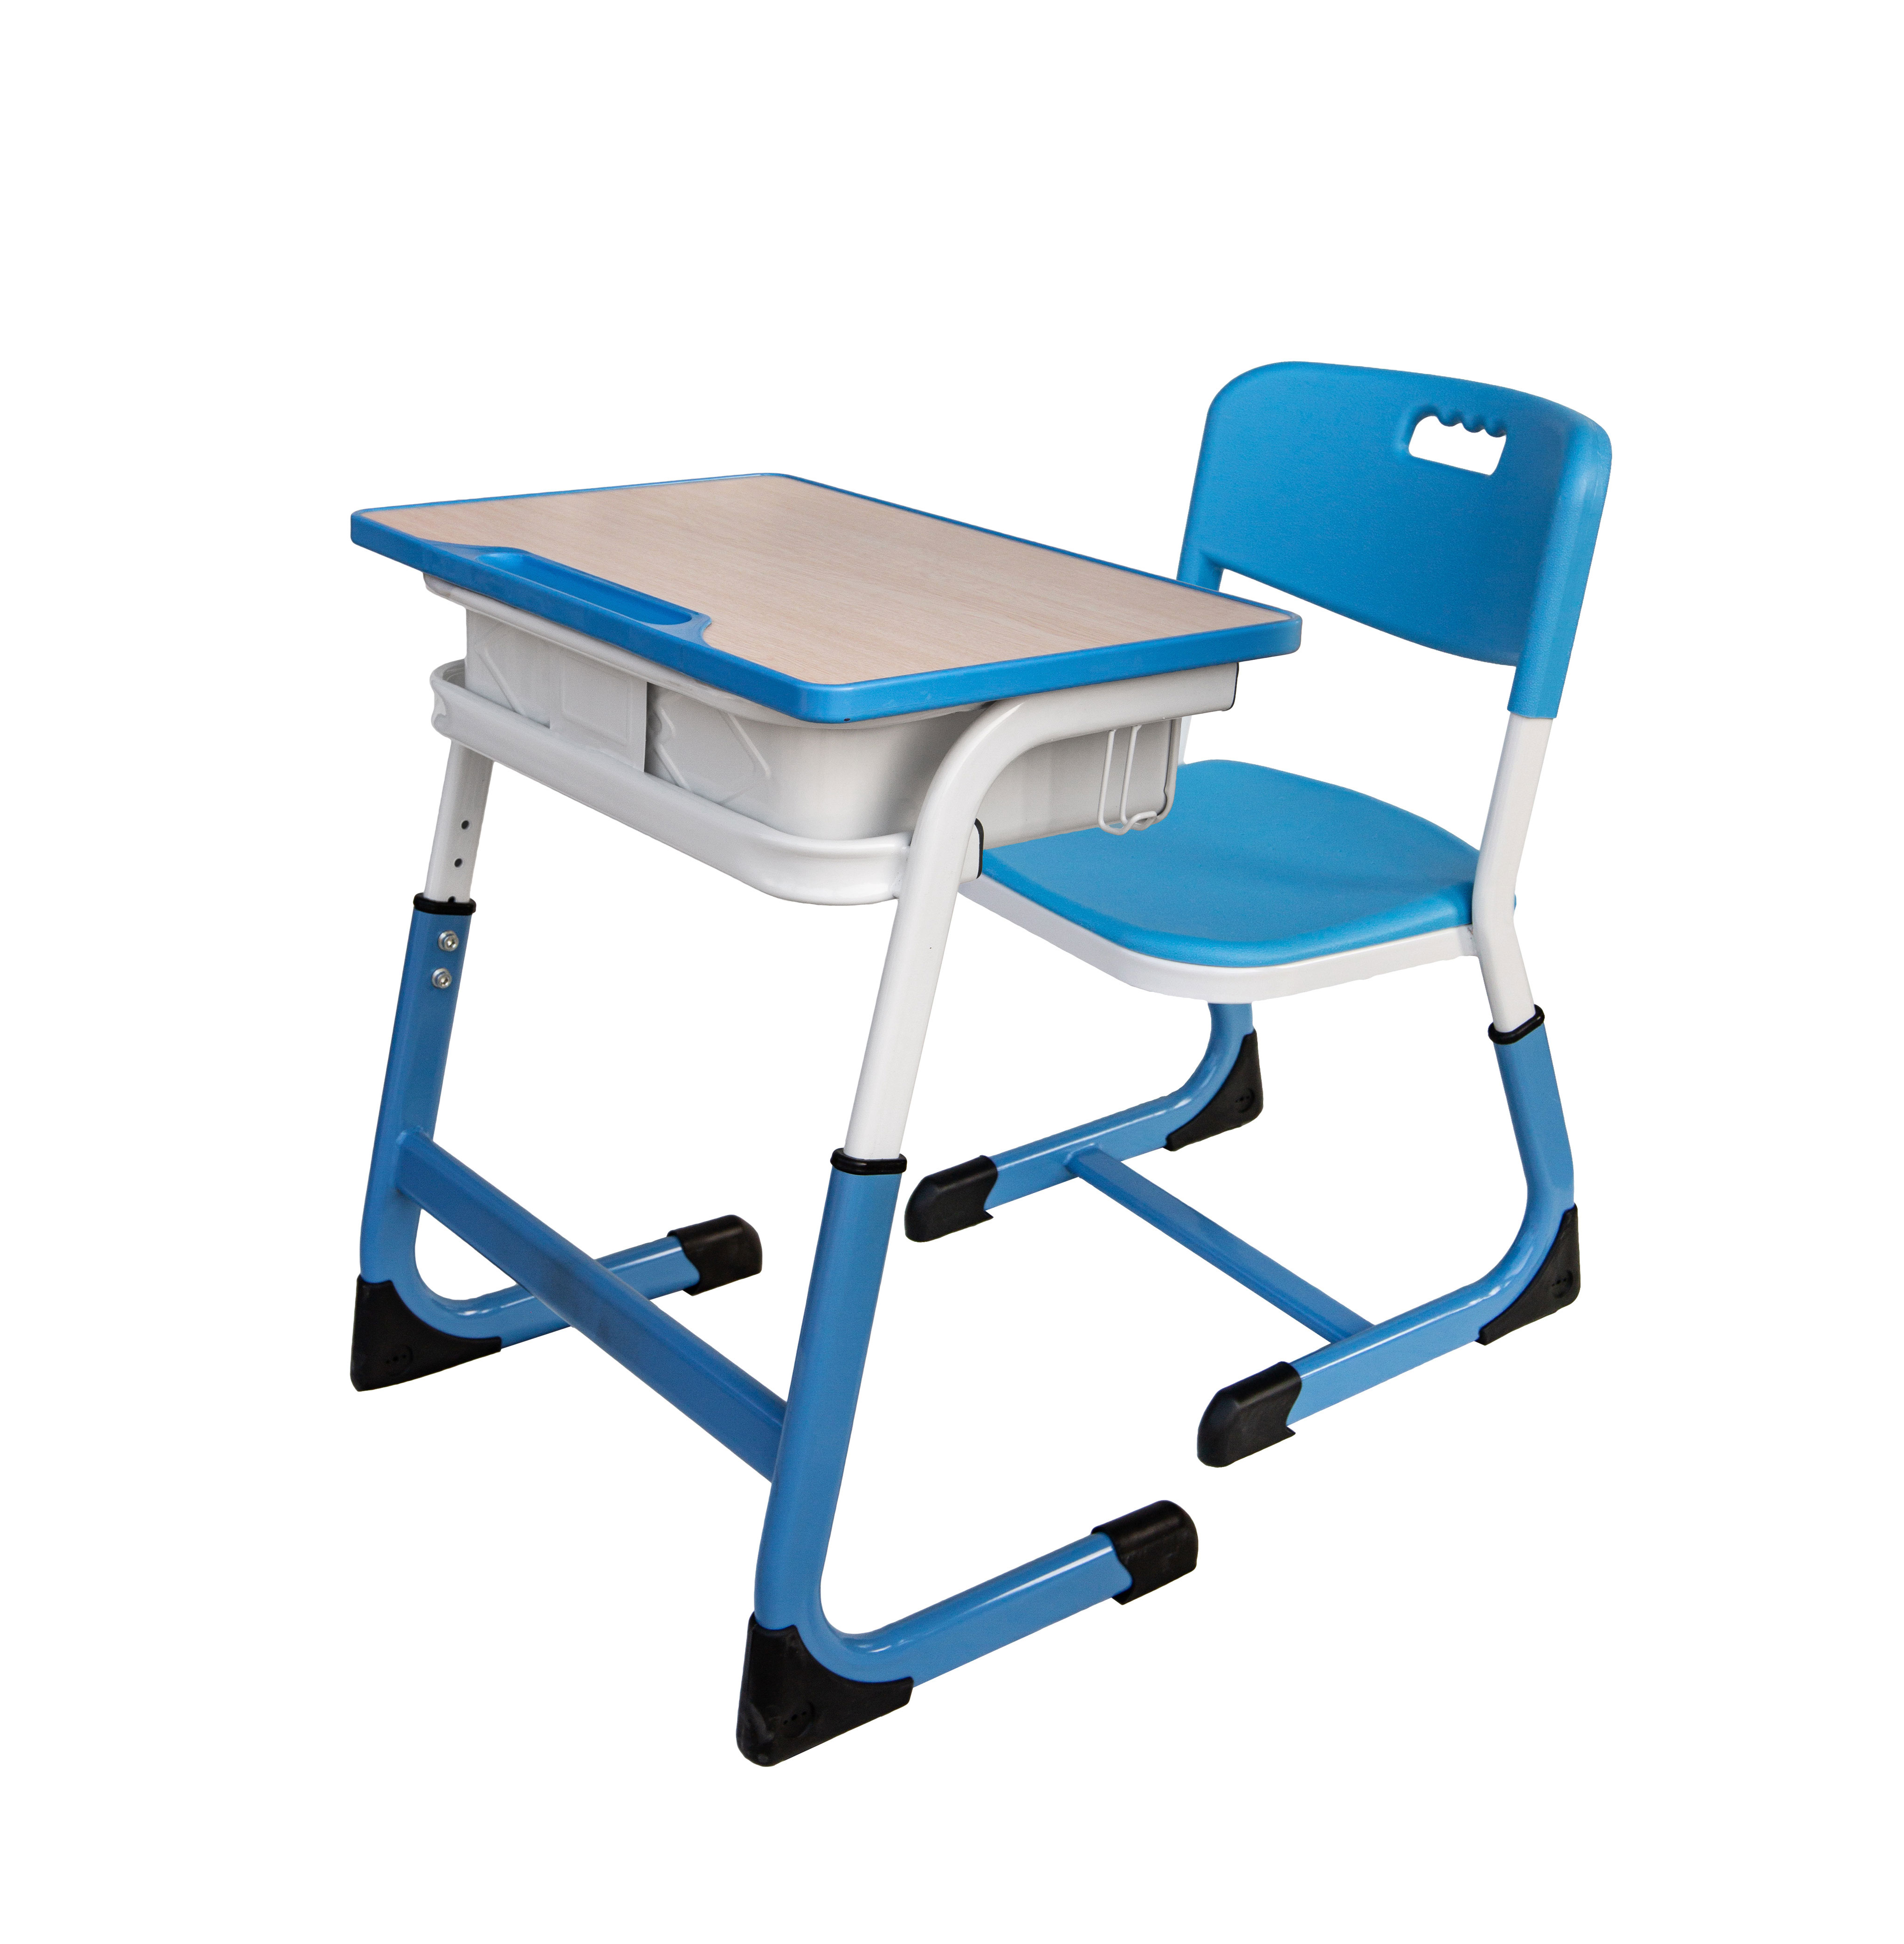 学生升降课桌椅ZYS-1004